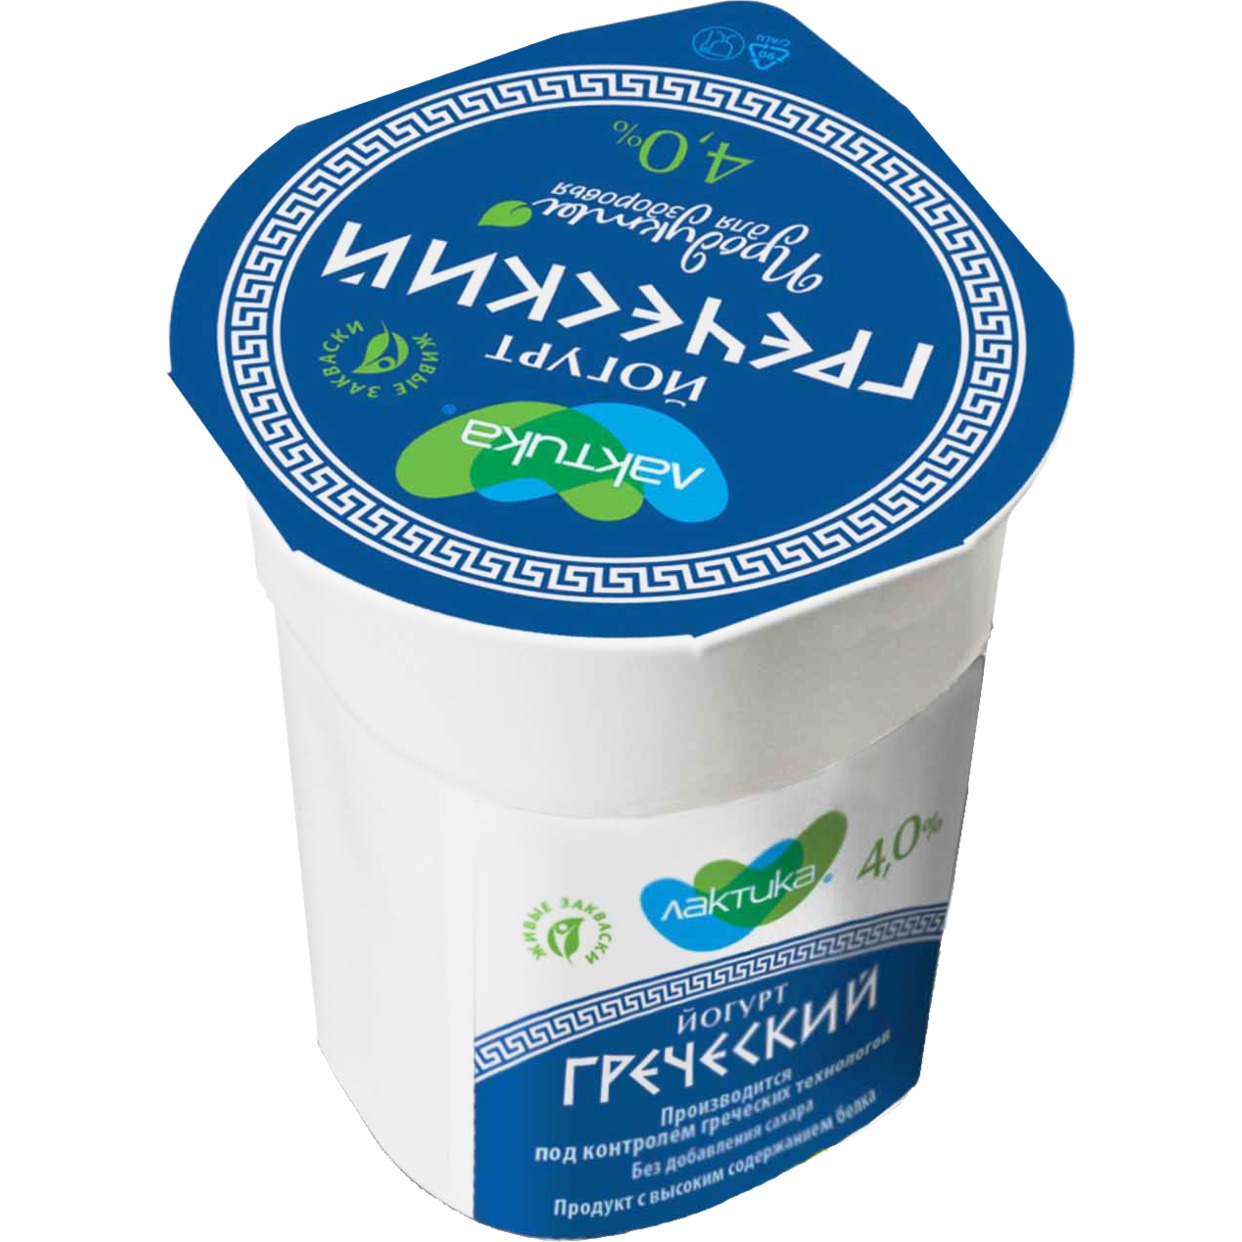 Йогурт Lactika, Греческий, натуральный, 4%, 120 г